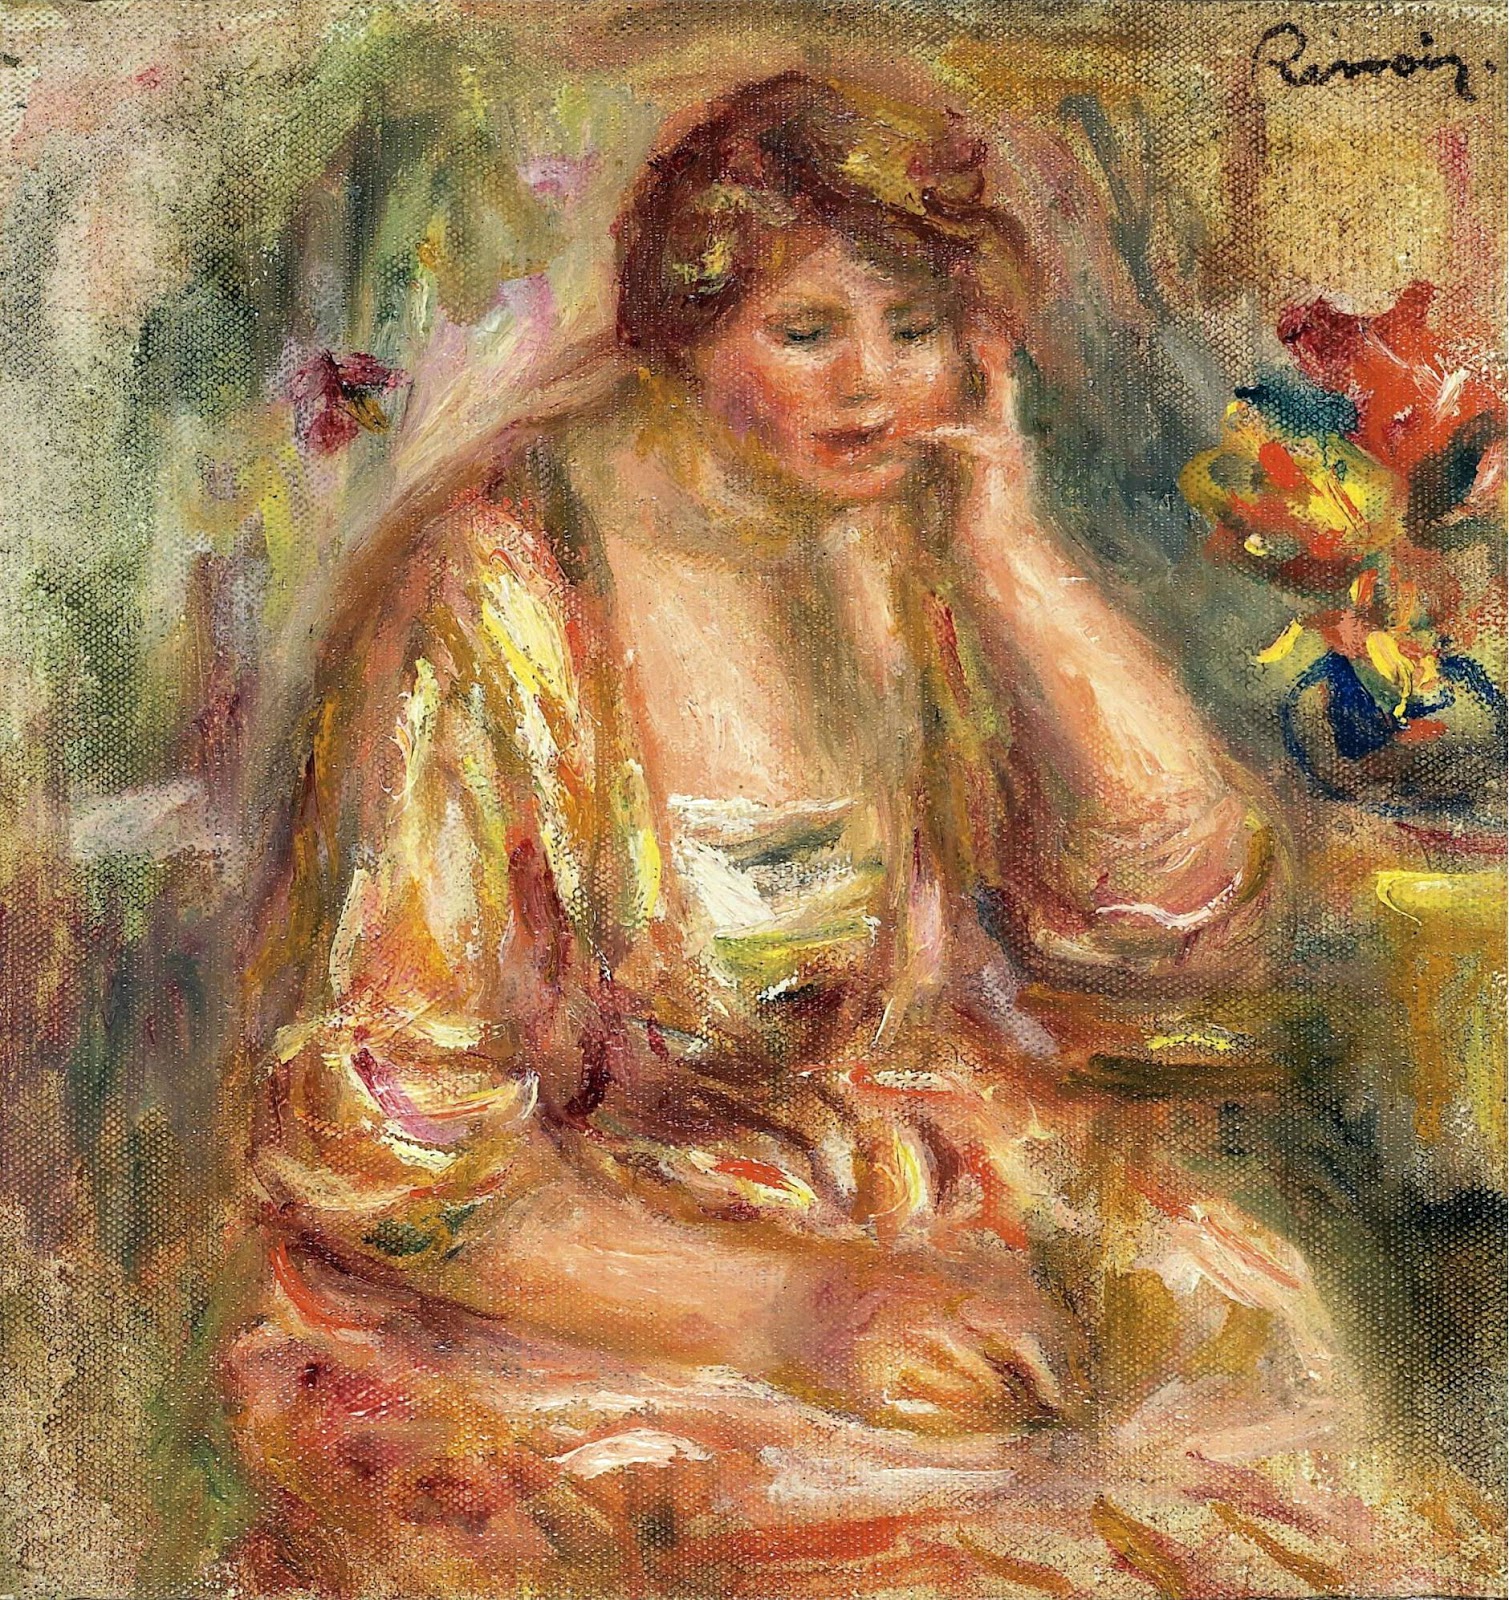 Pierre+Auguste+Renoir-1841-1-19 (791).jpg